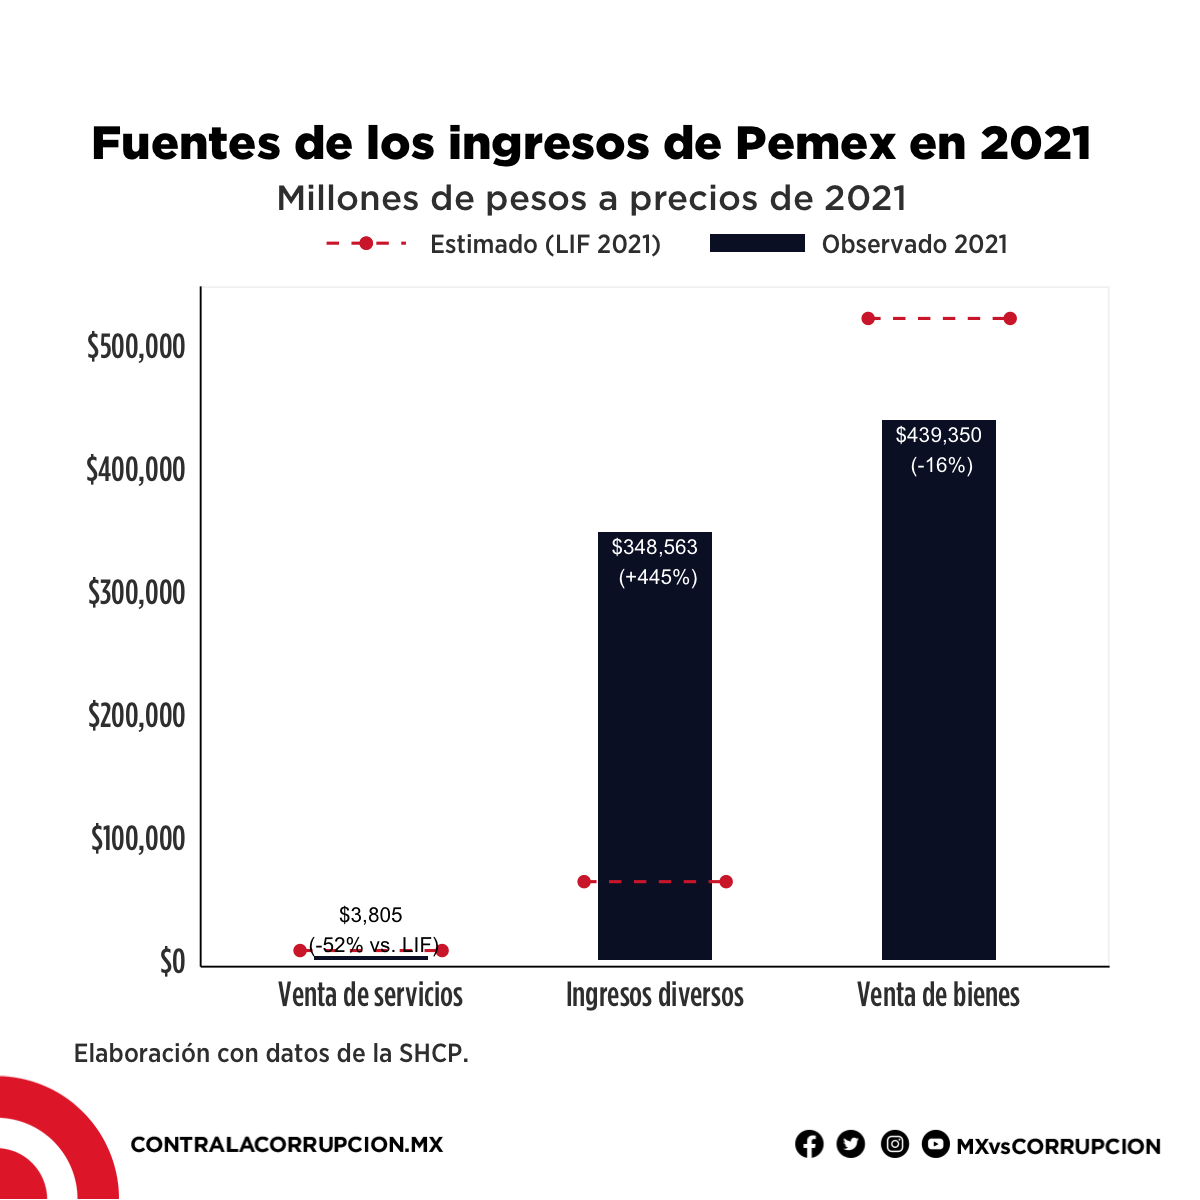 Fuentes de los ingresos de Pemex en 2021